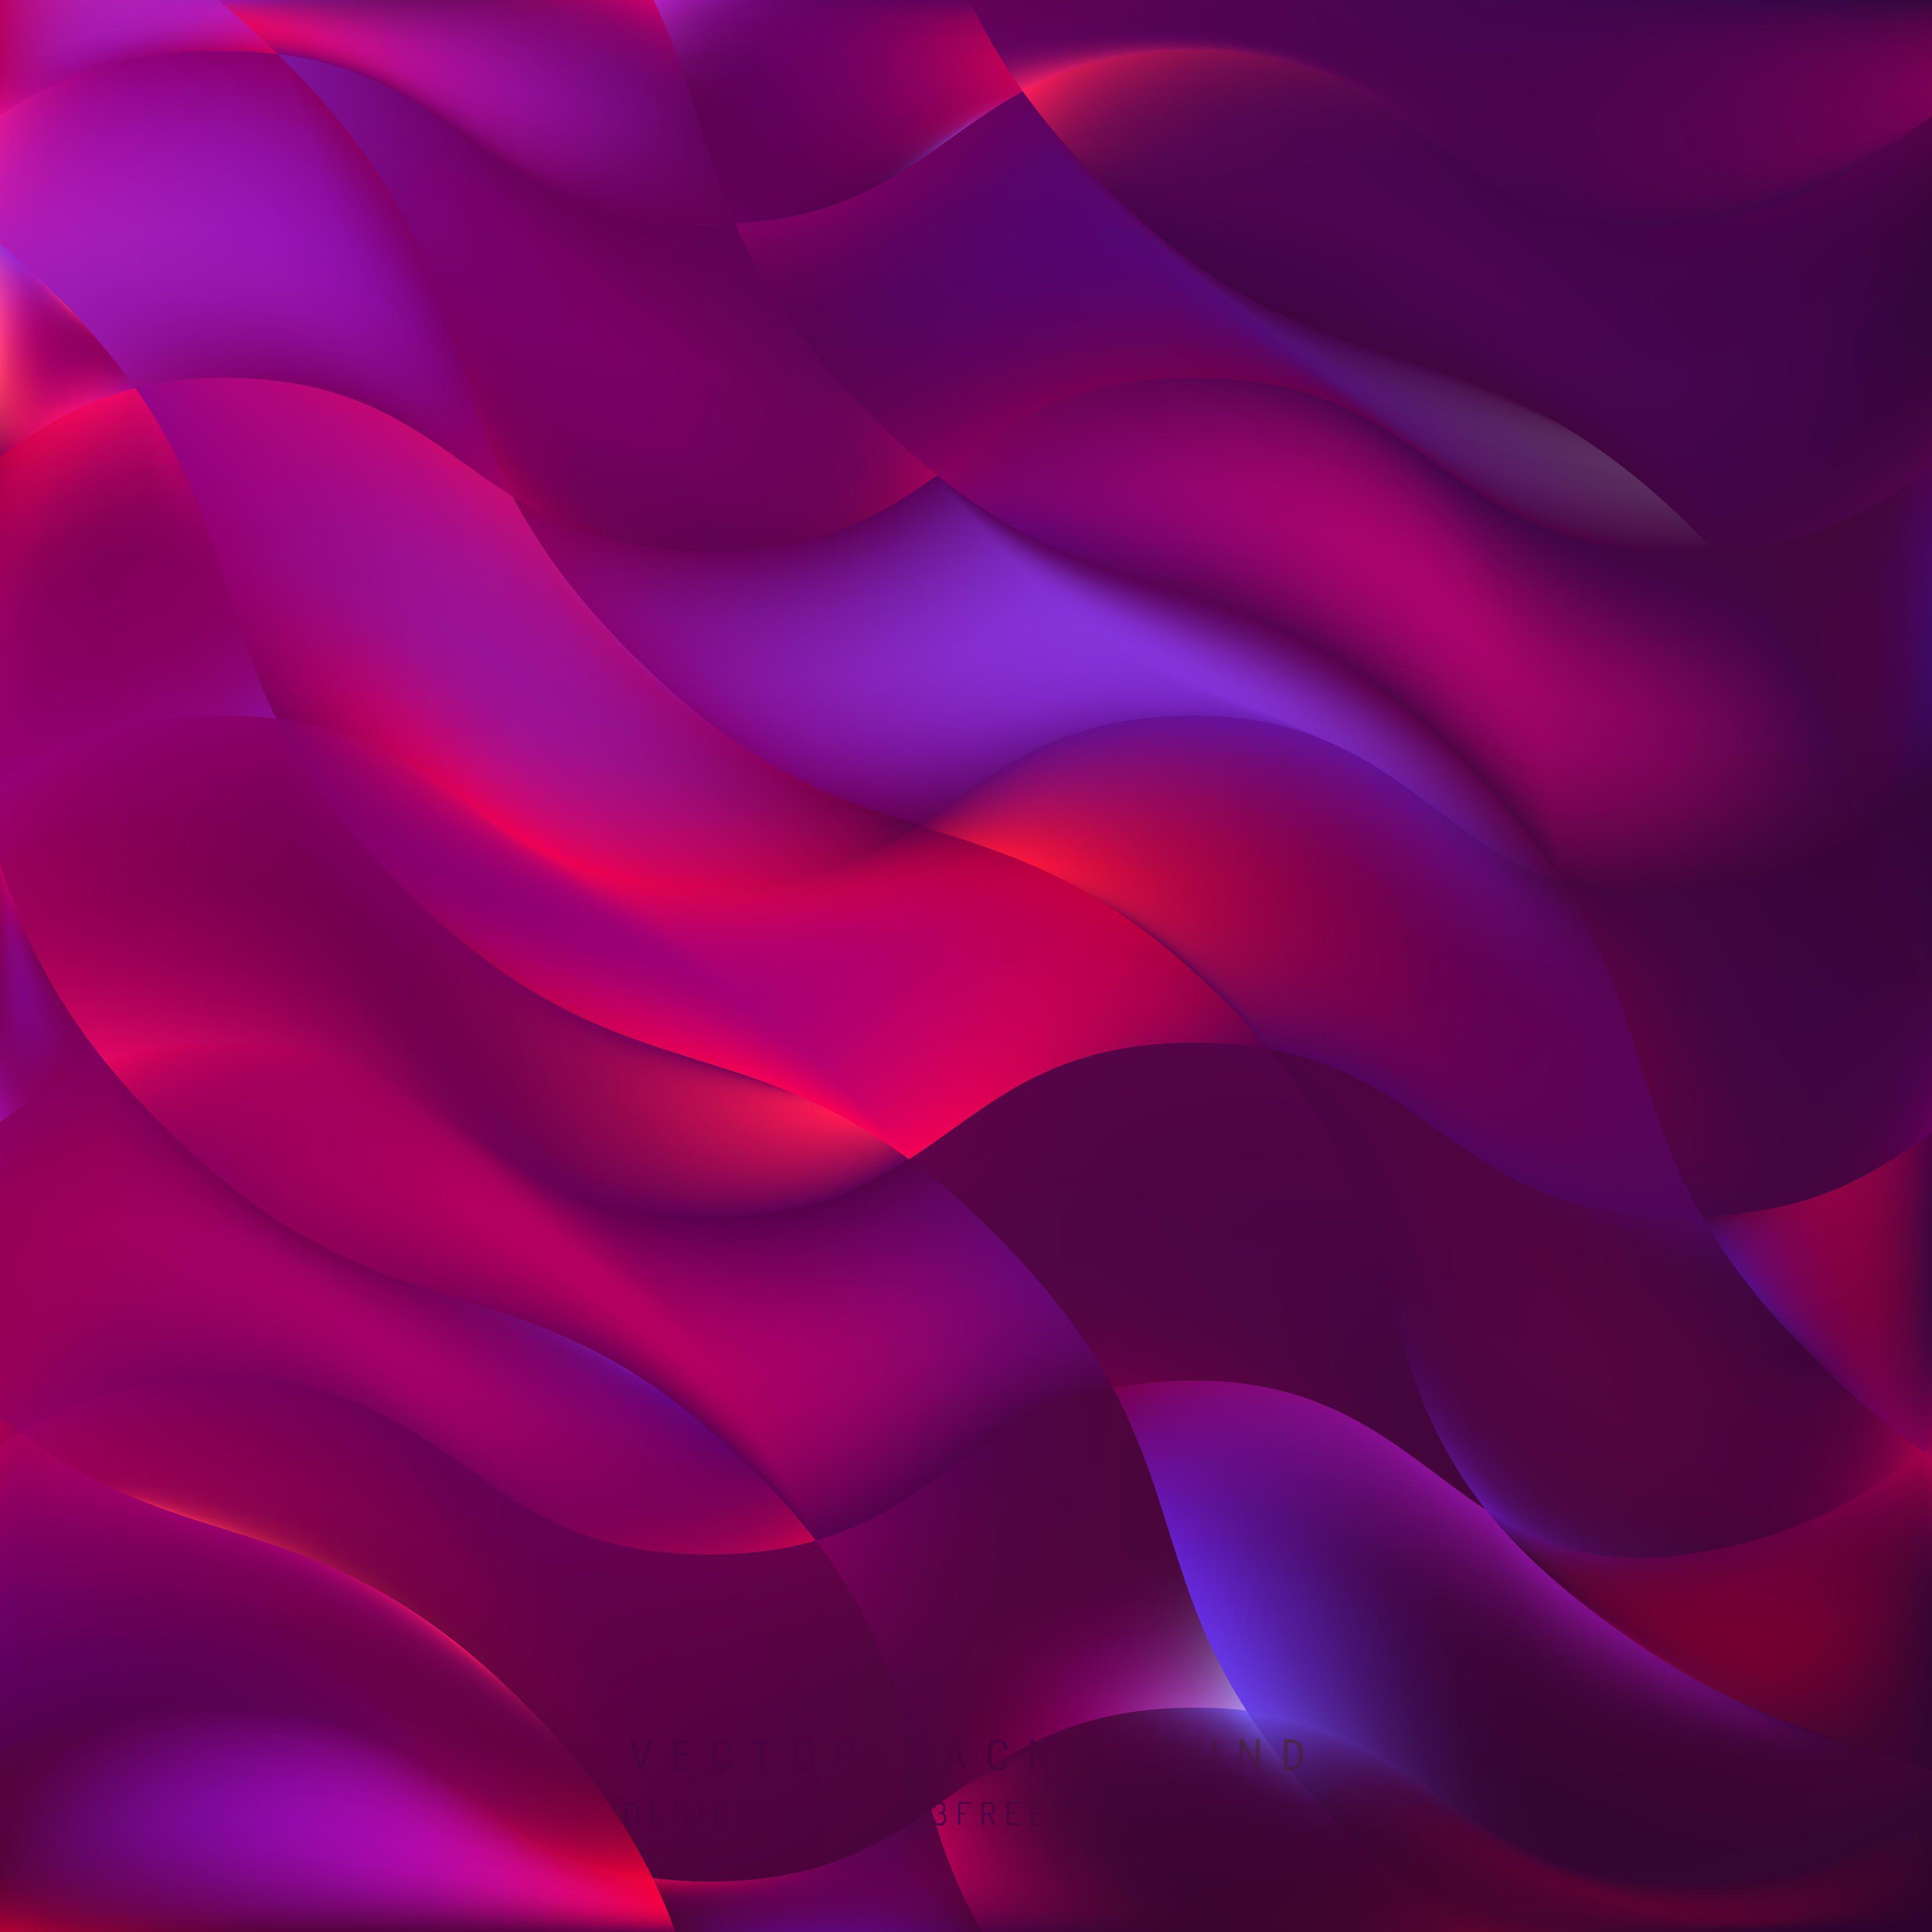 Purple Background Vectors. Download Free Vector Art & Graphics